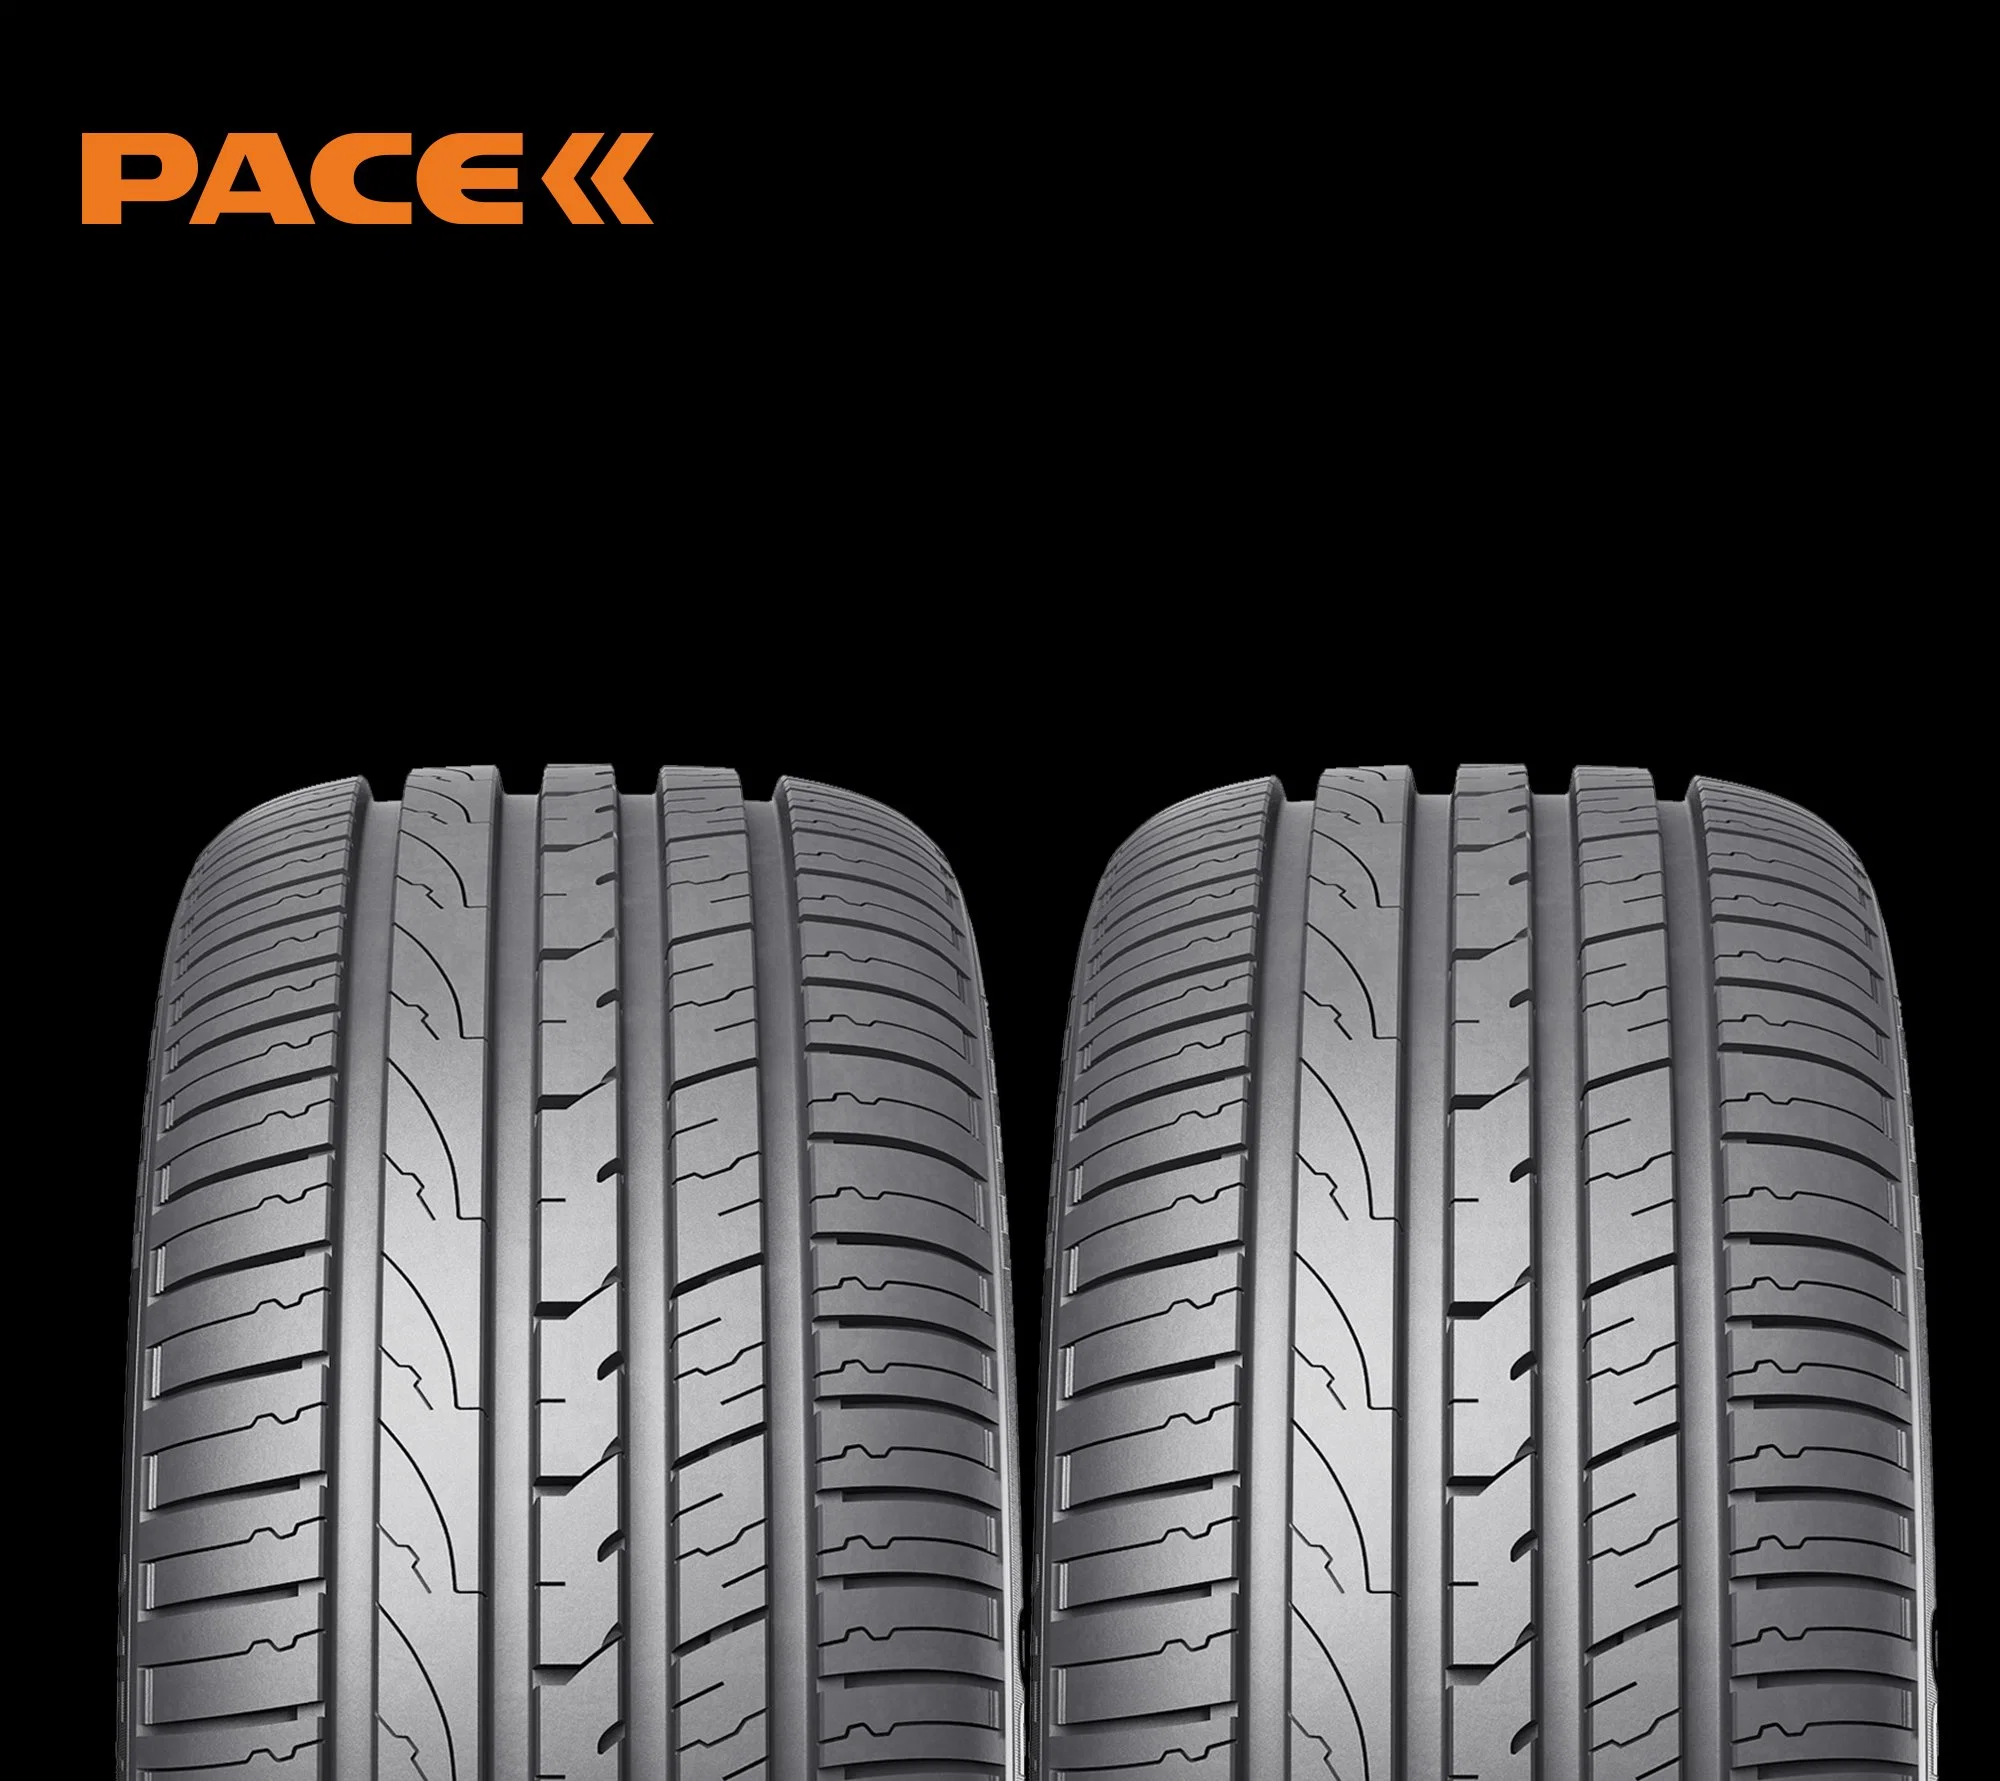 Resistente e Wear-Resisting pneus usados como os pneus do carro com segurança alta